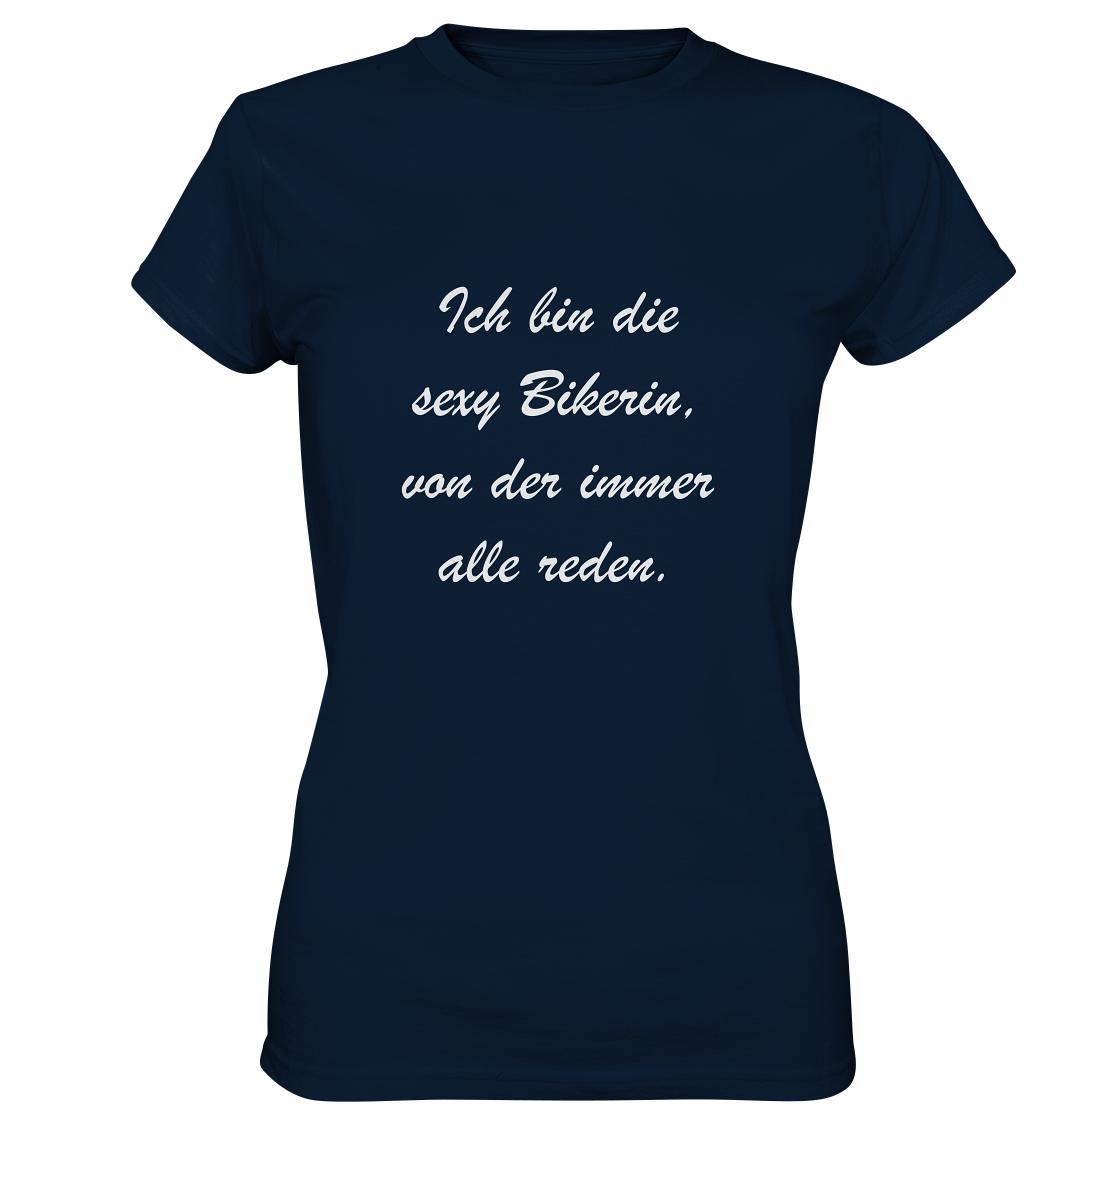 Damen-T-Shirt, Rundhals, mit weißem Spruch "Ich bin die sexy Bikerin, von der immer alle reden." dunkel blau